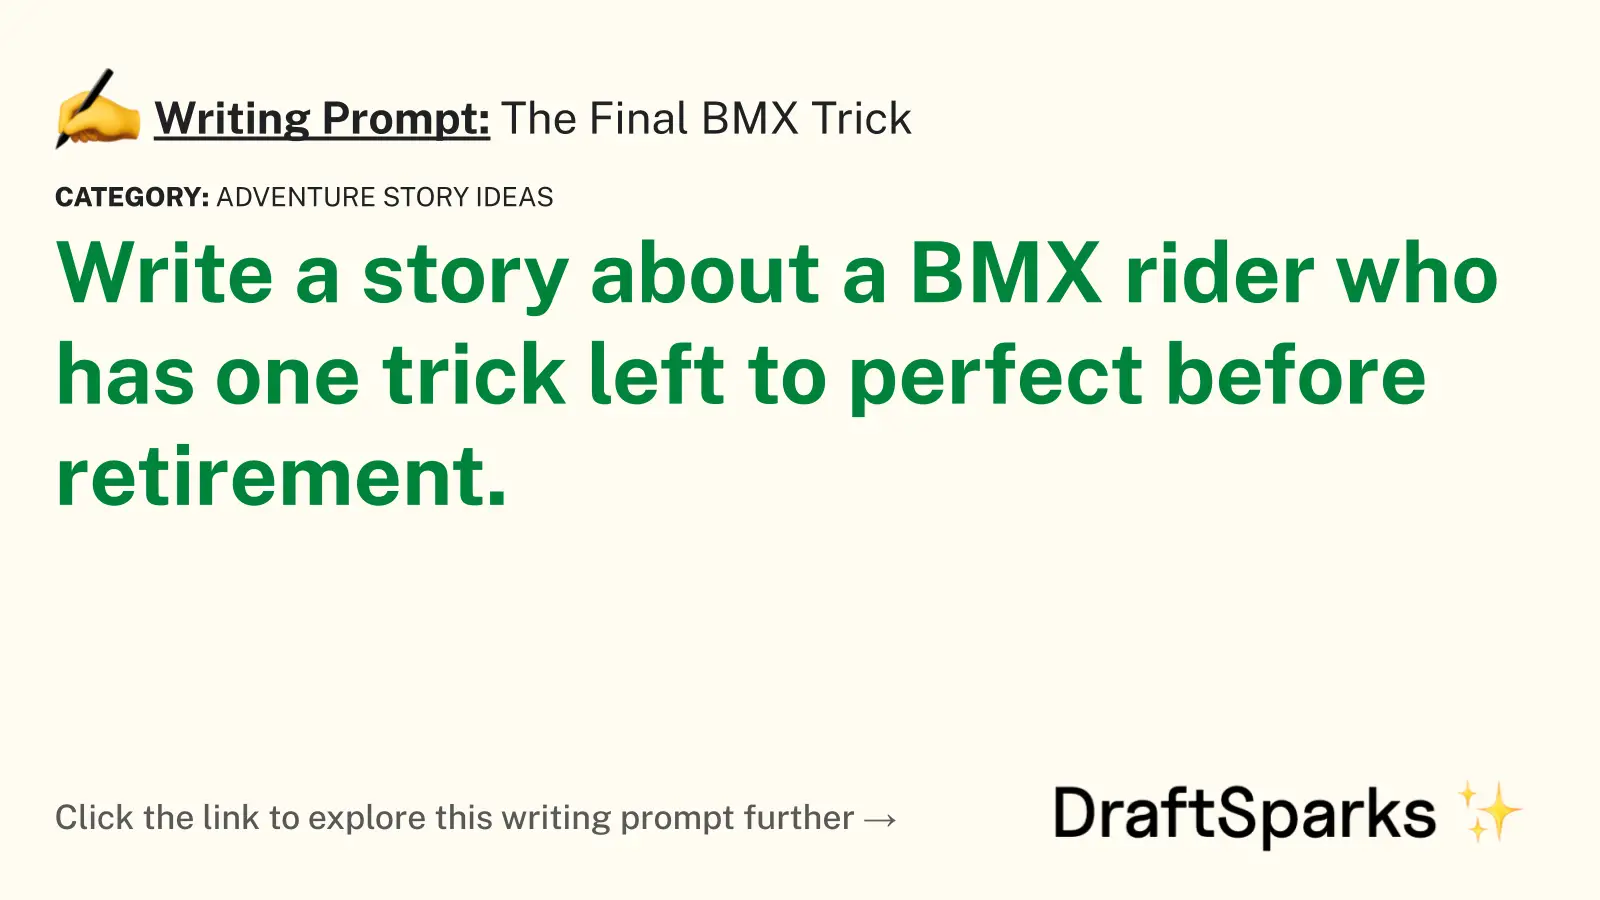 The Final BMX Trick